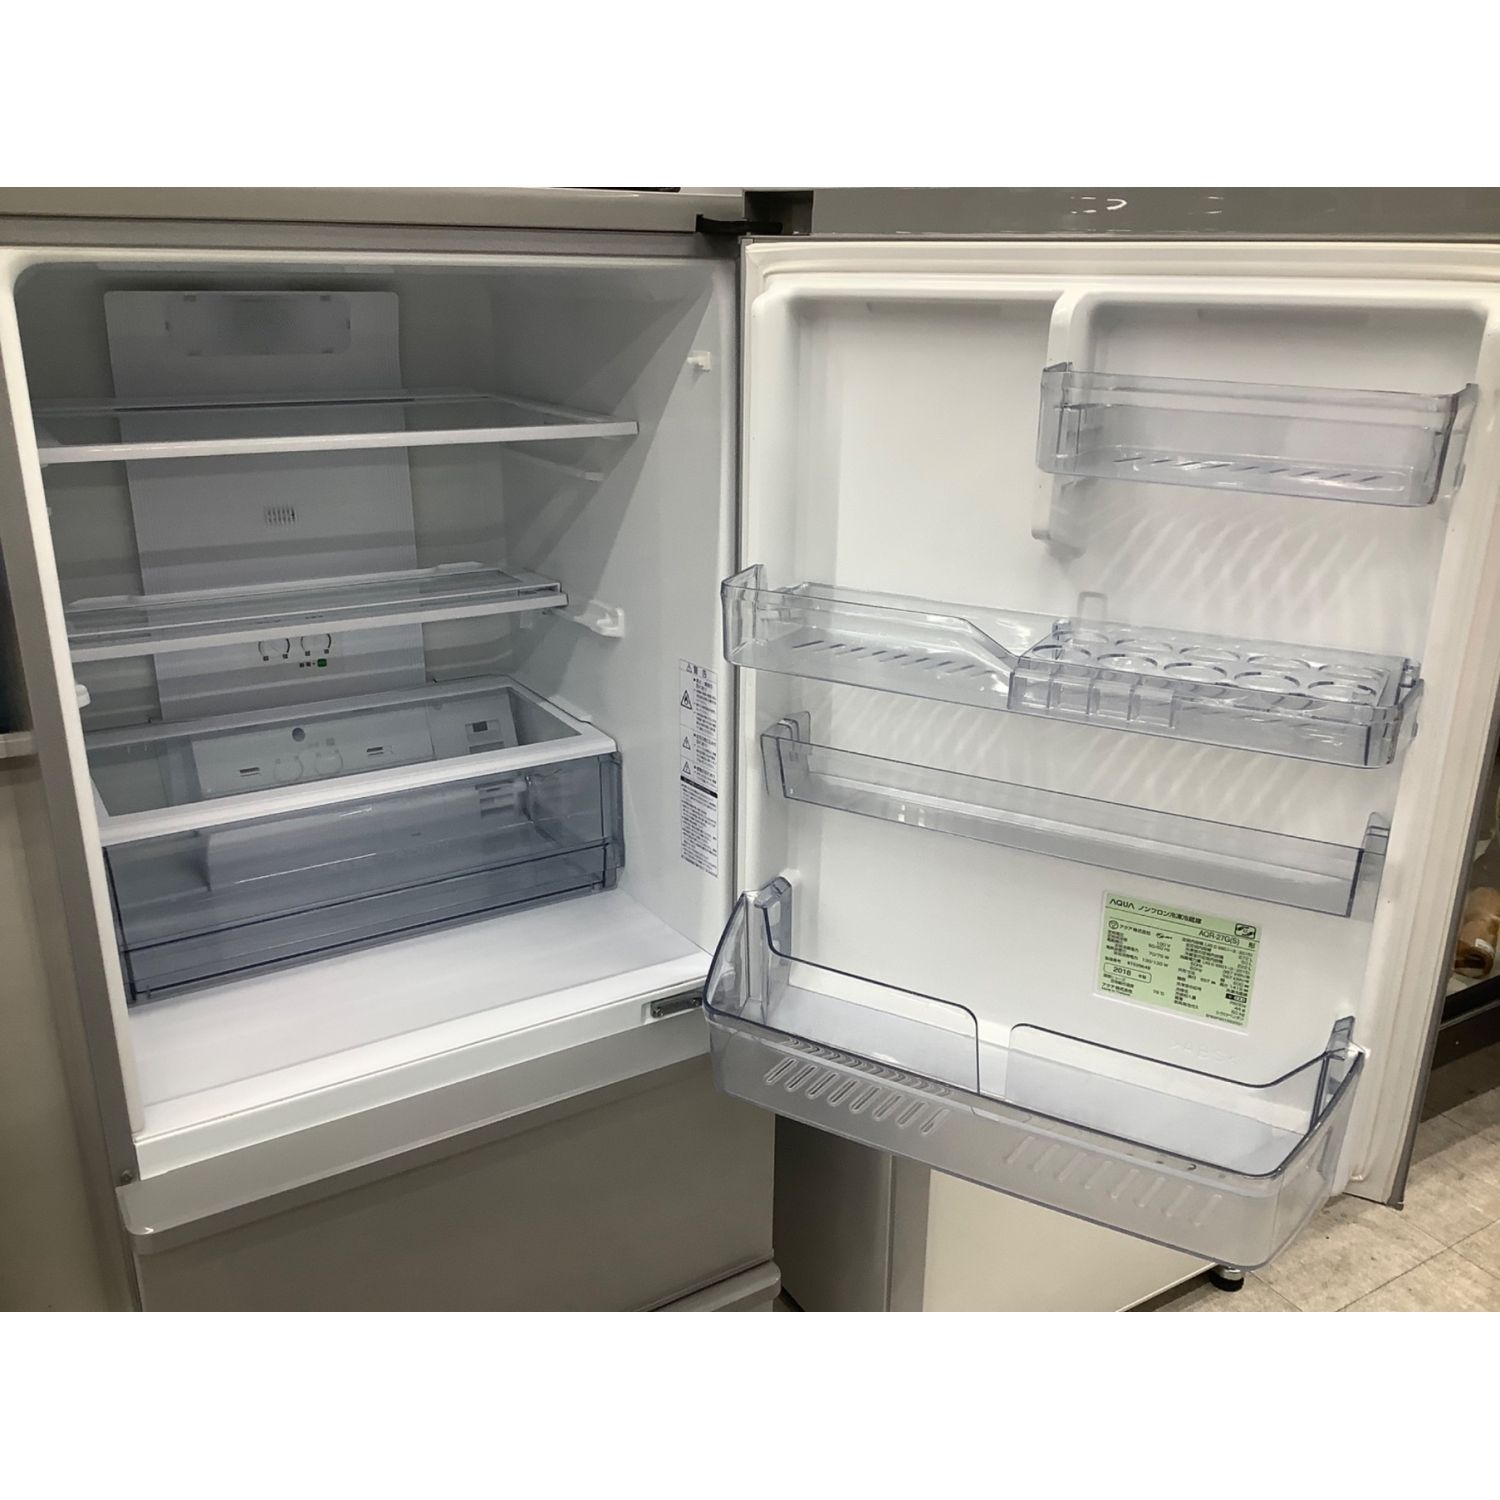 AQUA (アクア) 3ドア冷蔵庫 4 AQR-27G 2018年製 272L 50L クリーニング